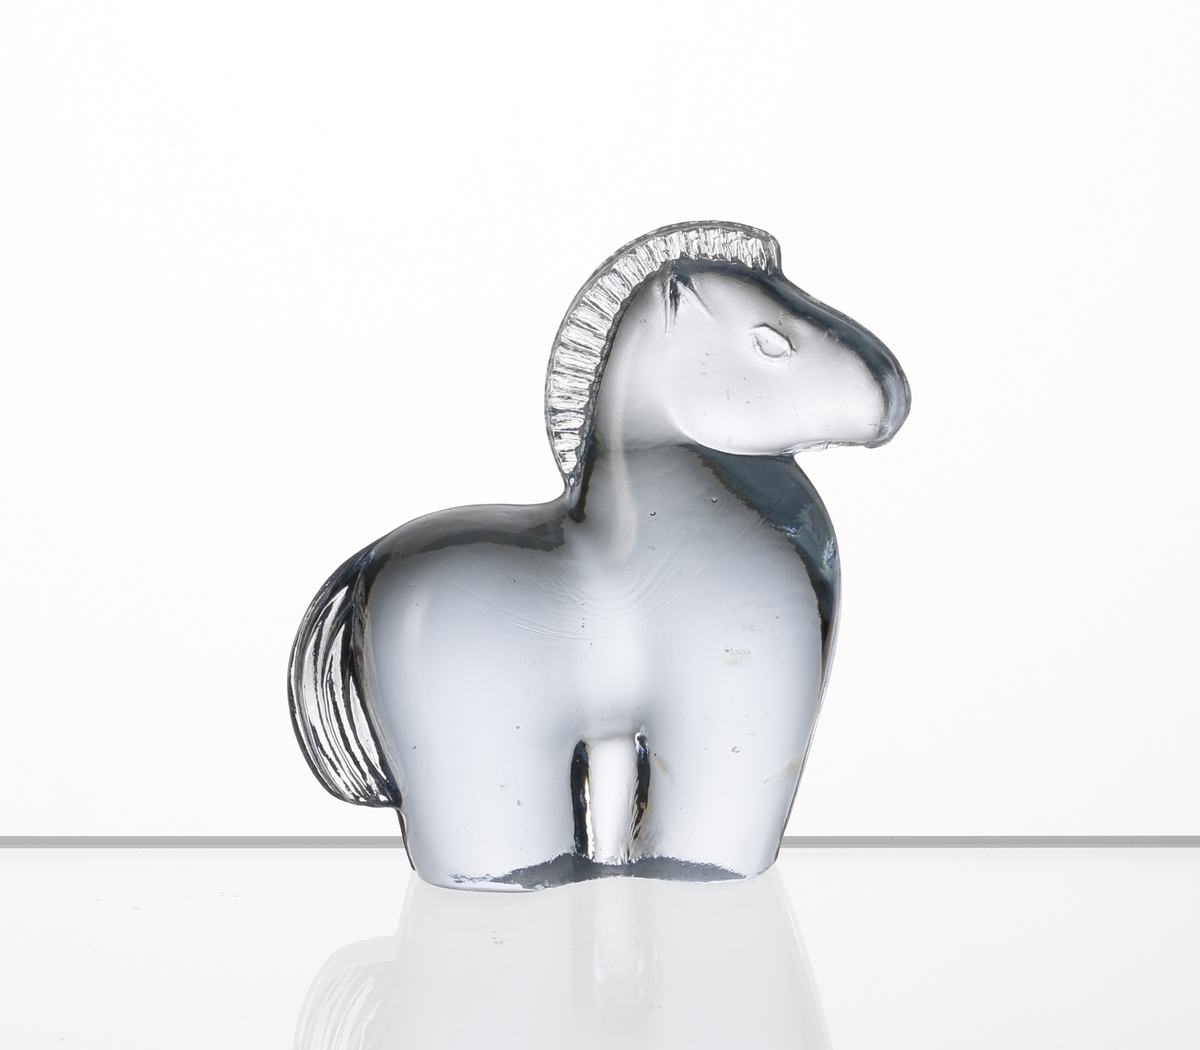 Formgiven av Kjell Blomberg. Mindre figuring i svagt blåtonat glas, föreställande en häst.